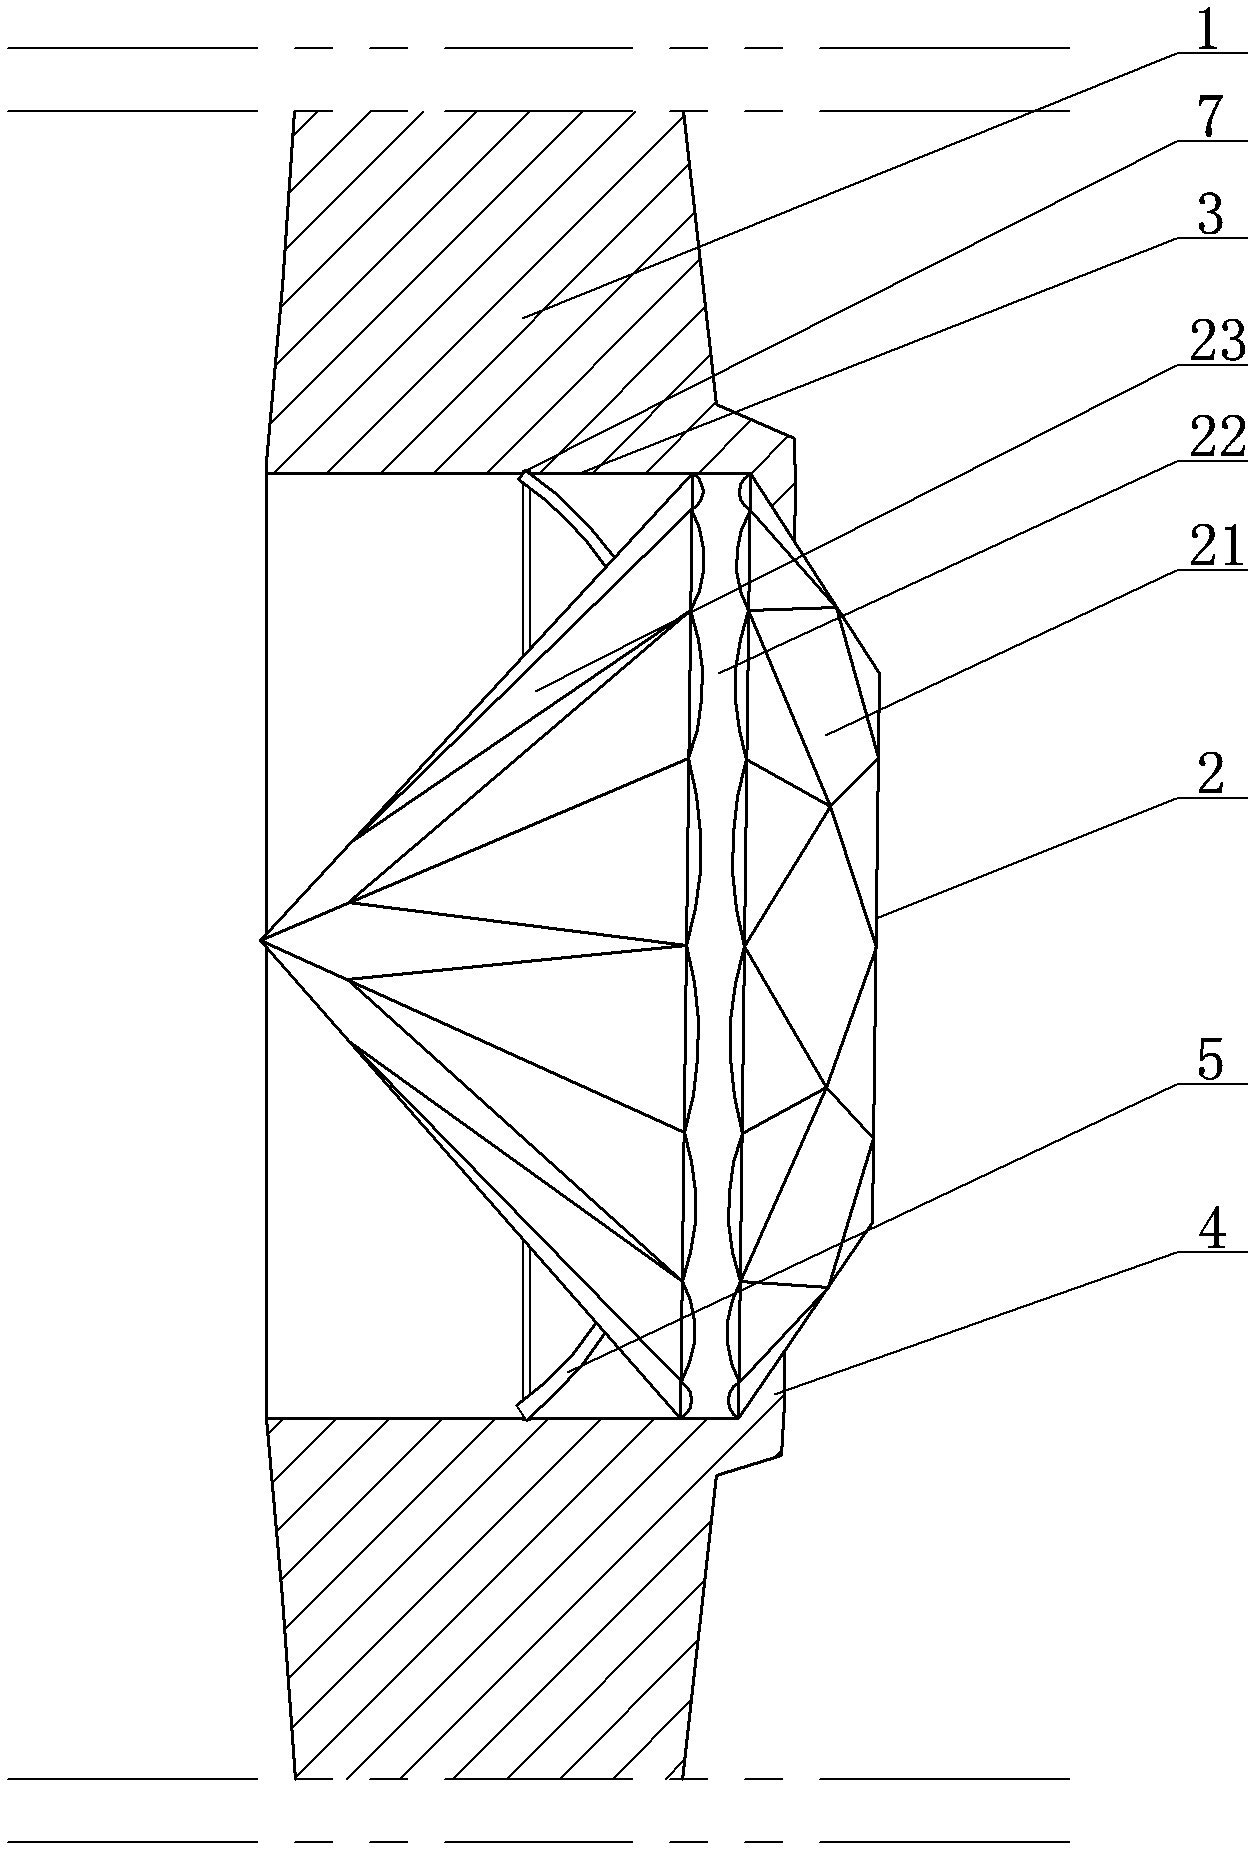 Diamond-inlaid structure, diamond inlaying method and diamond-inlaid glasses